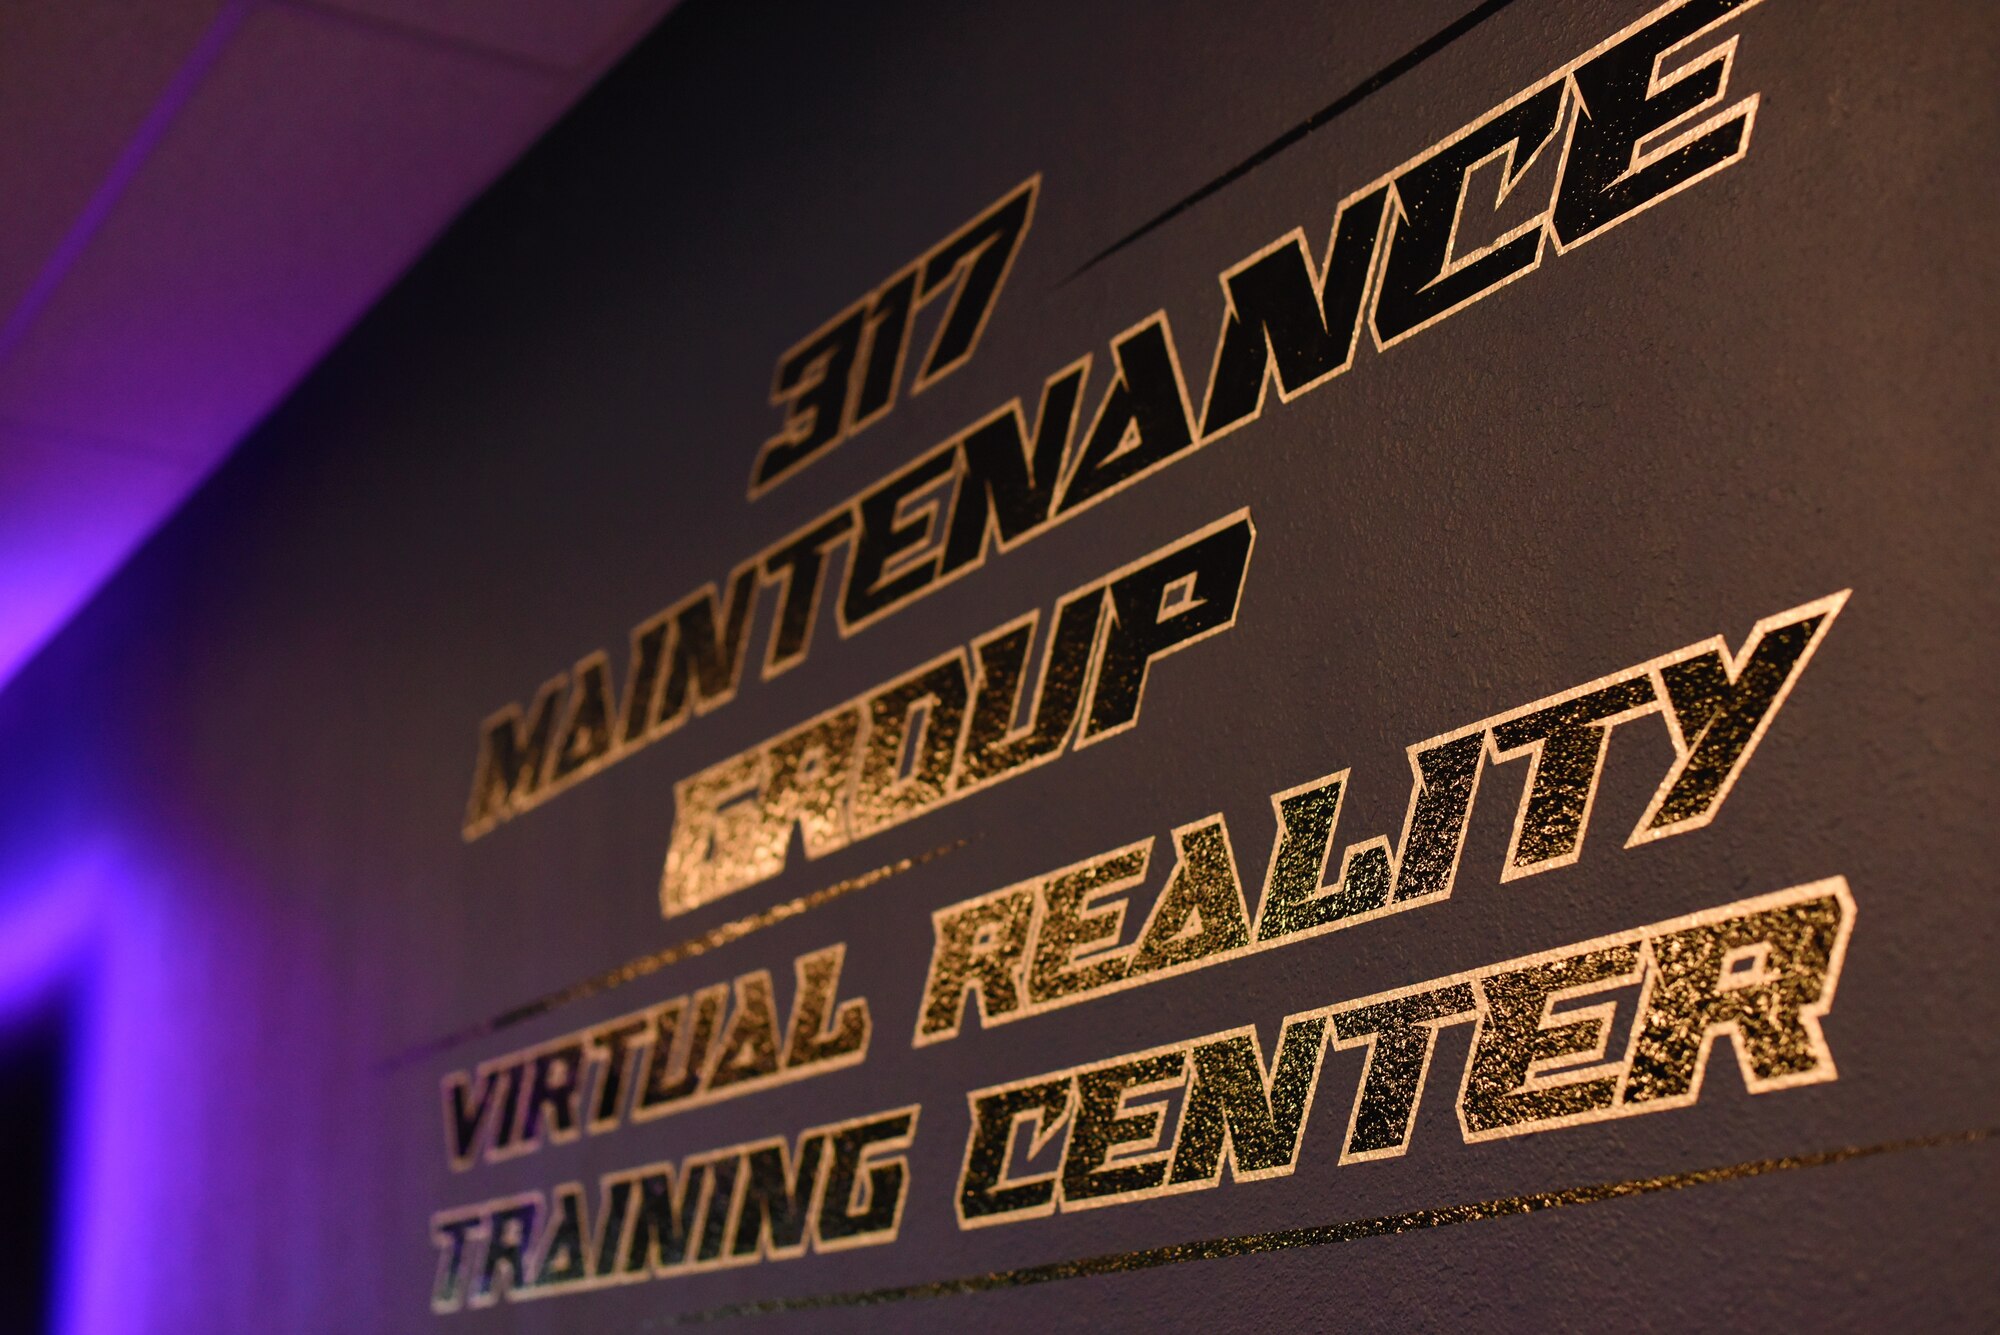 Artistic shot of virtual reality training lab